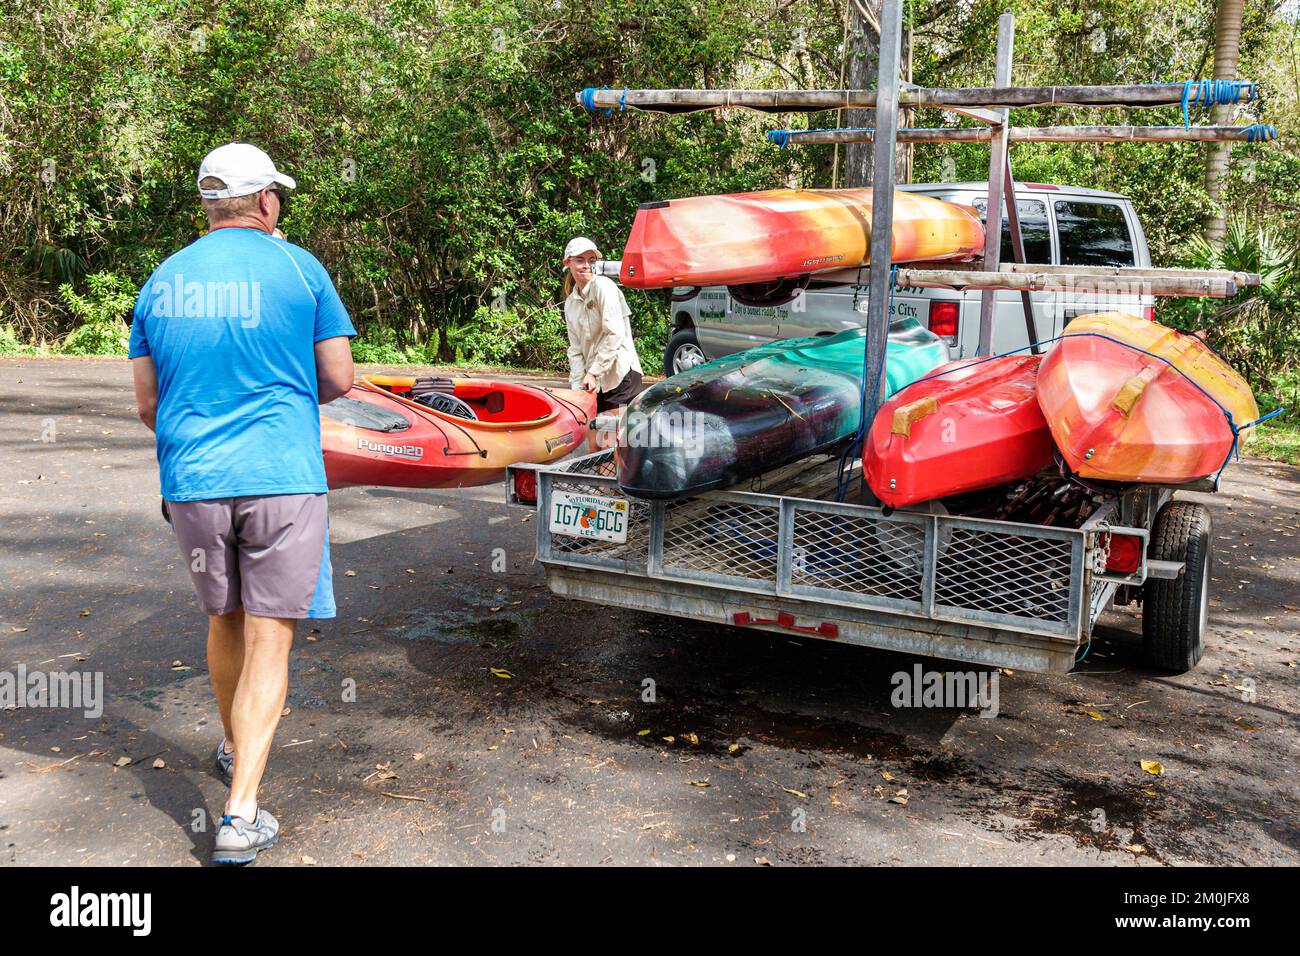 Everglades Miami Florida, Tamiami Trail US Route 41 strada parco kayak kayak carico, uomo uomo uomo maschio donna donna donna donna donna donna donna adulti donna Foto Stock